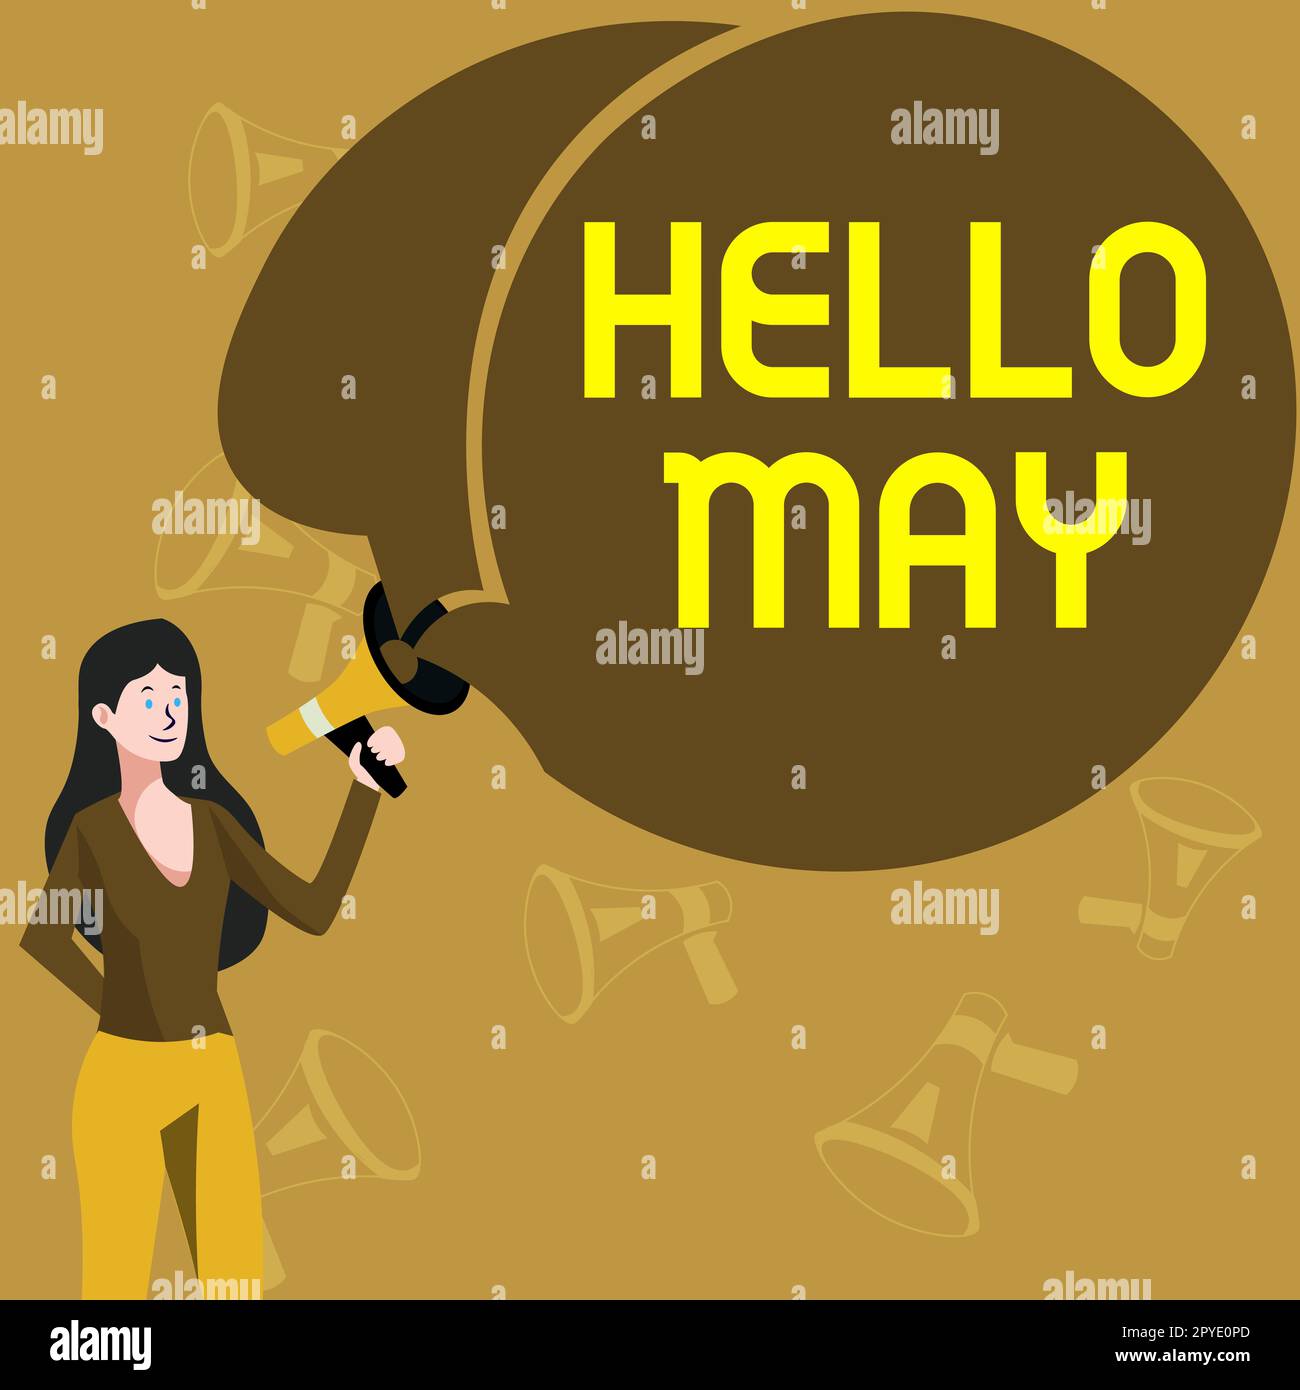 Cartello di testo con la scritta Hello May. Approccio aziendale per affrontare il quinto mese dell'anno con ispirazione e incoraggiamento Foto Stock